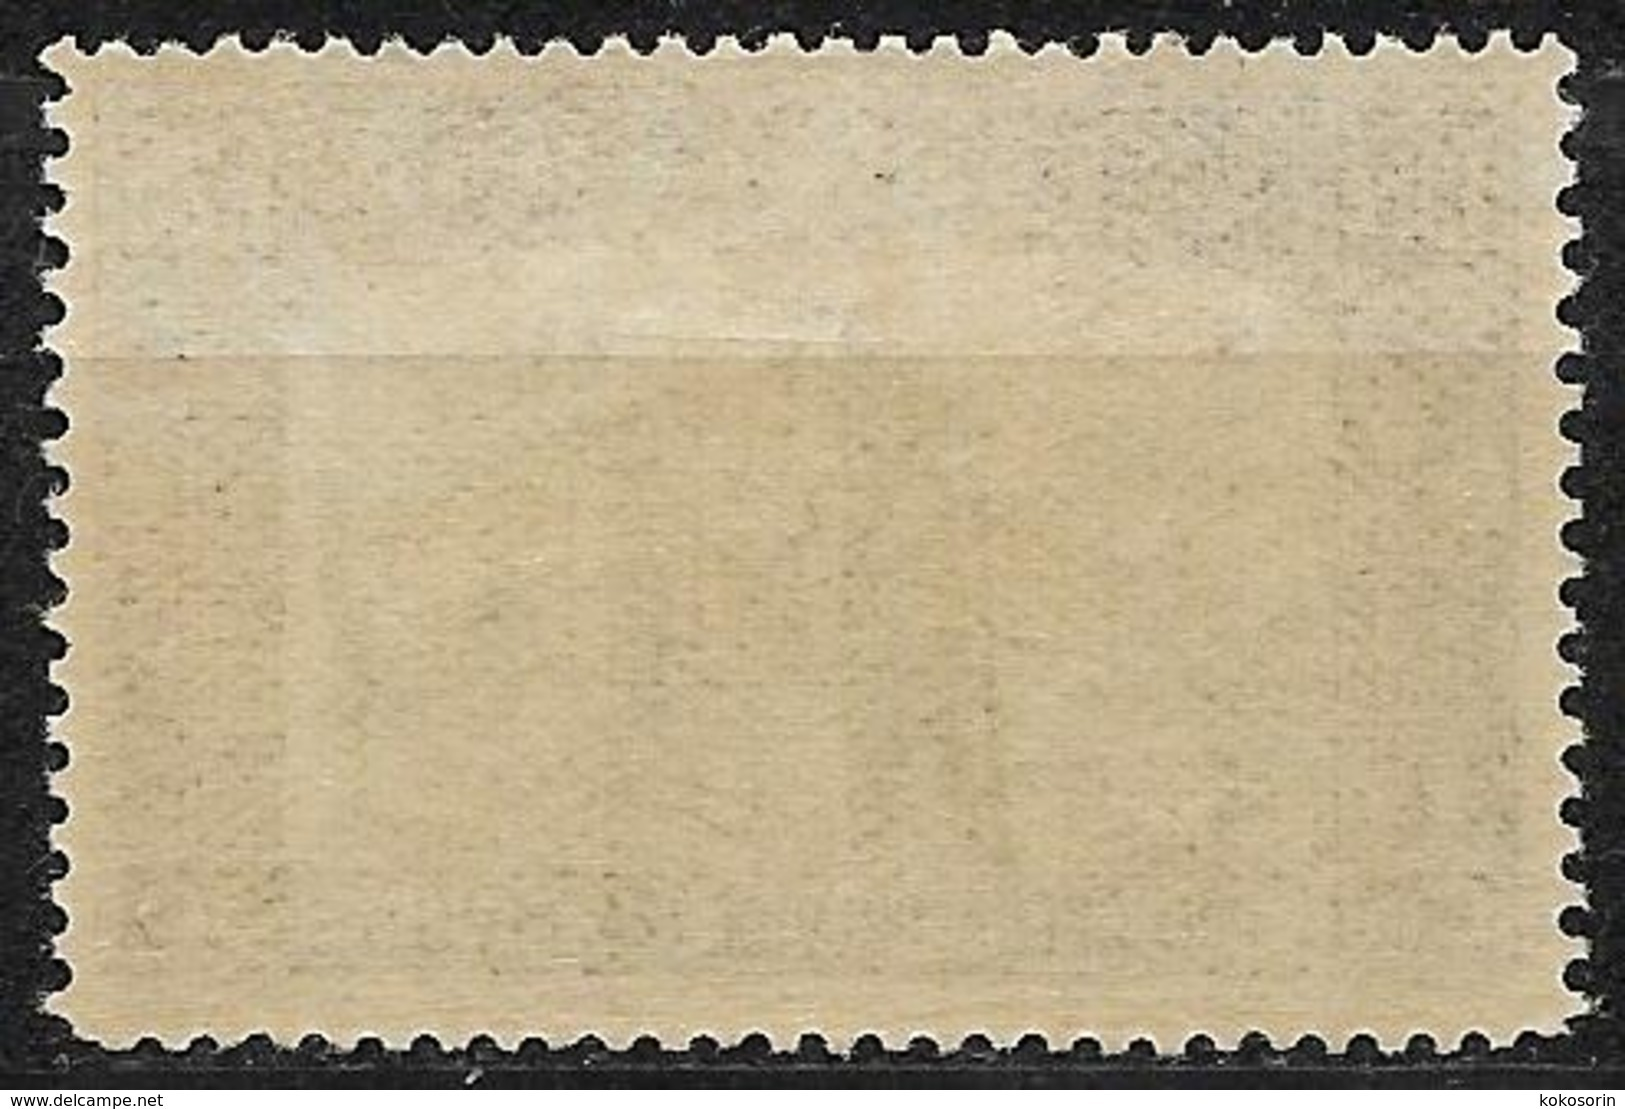 Italia - Italy - 1928, Mi. Nr. 277 - Ungebraucht